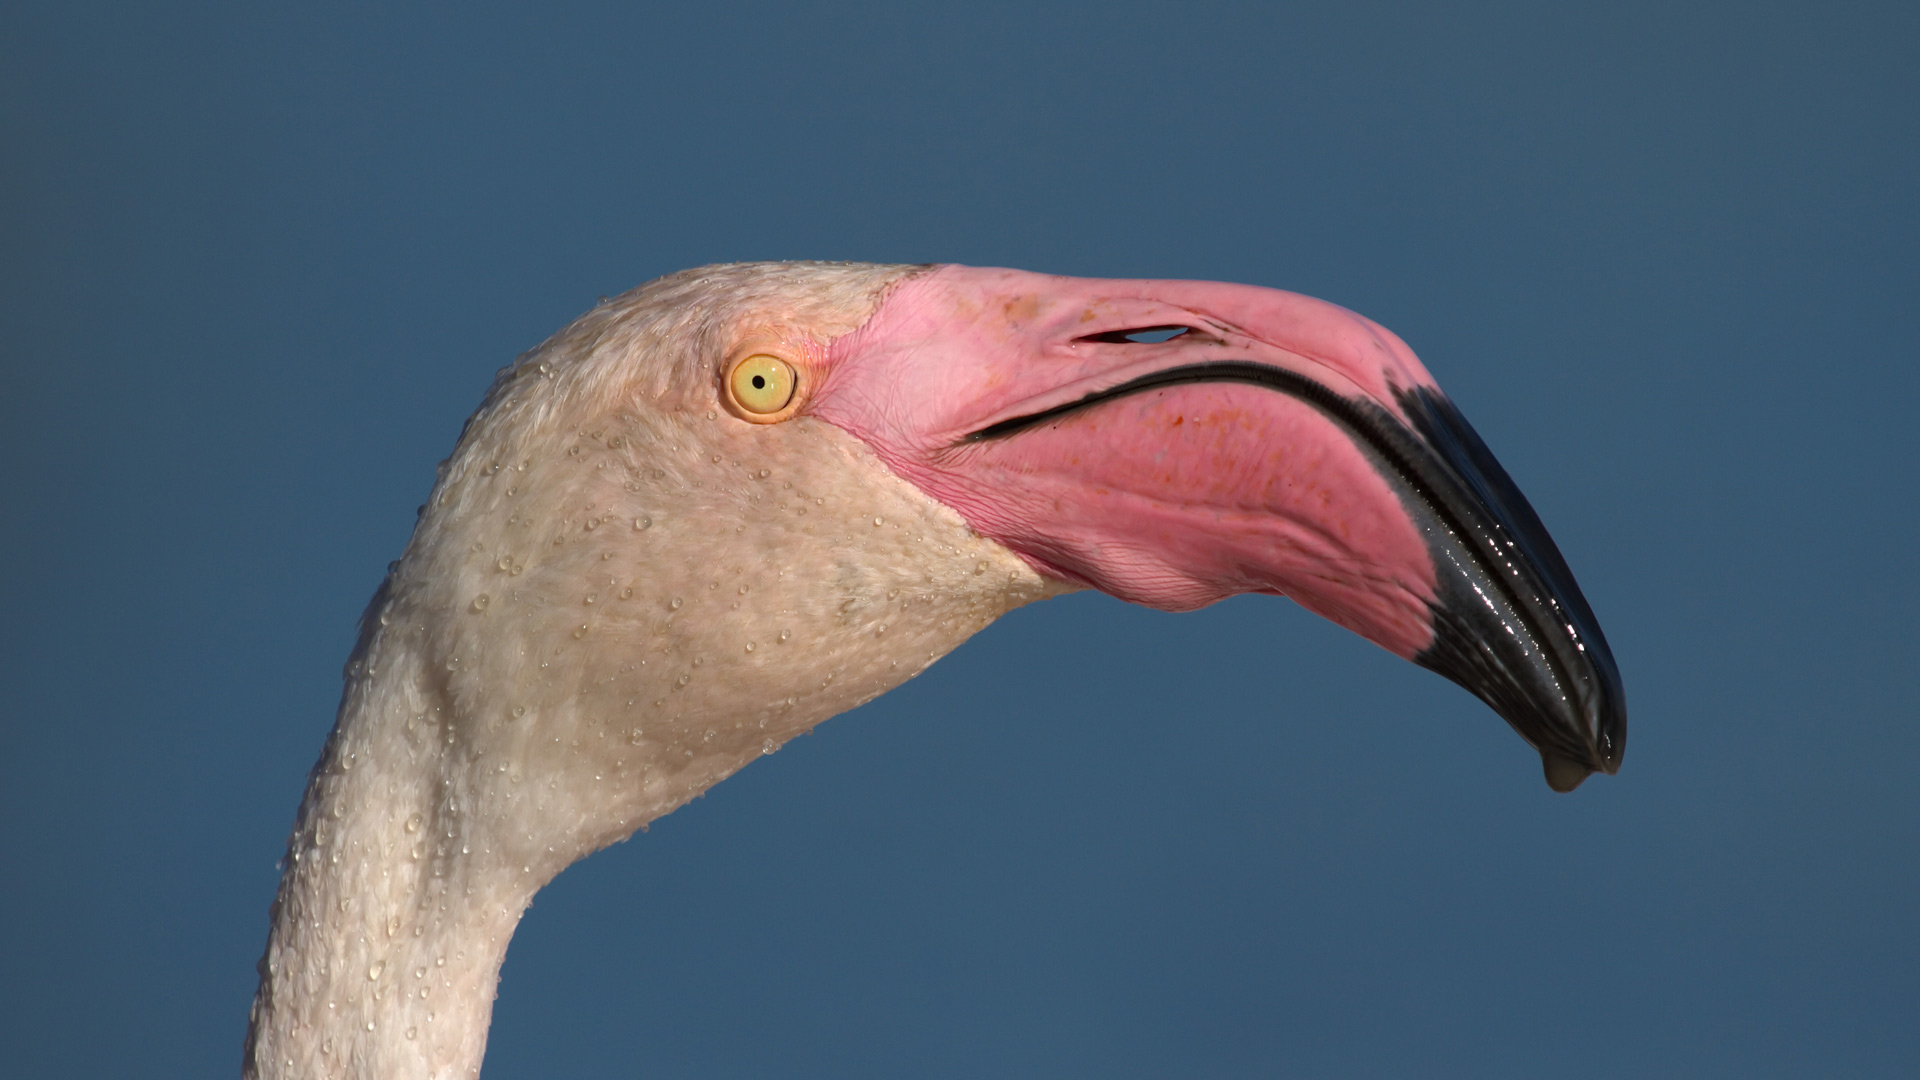 Greater flamingo, phoenicopterus roseus, portrait in Camargue, France